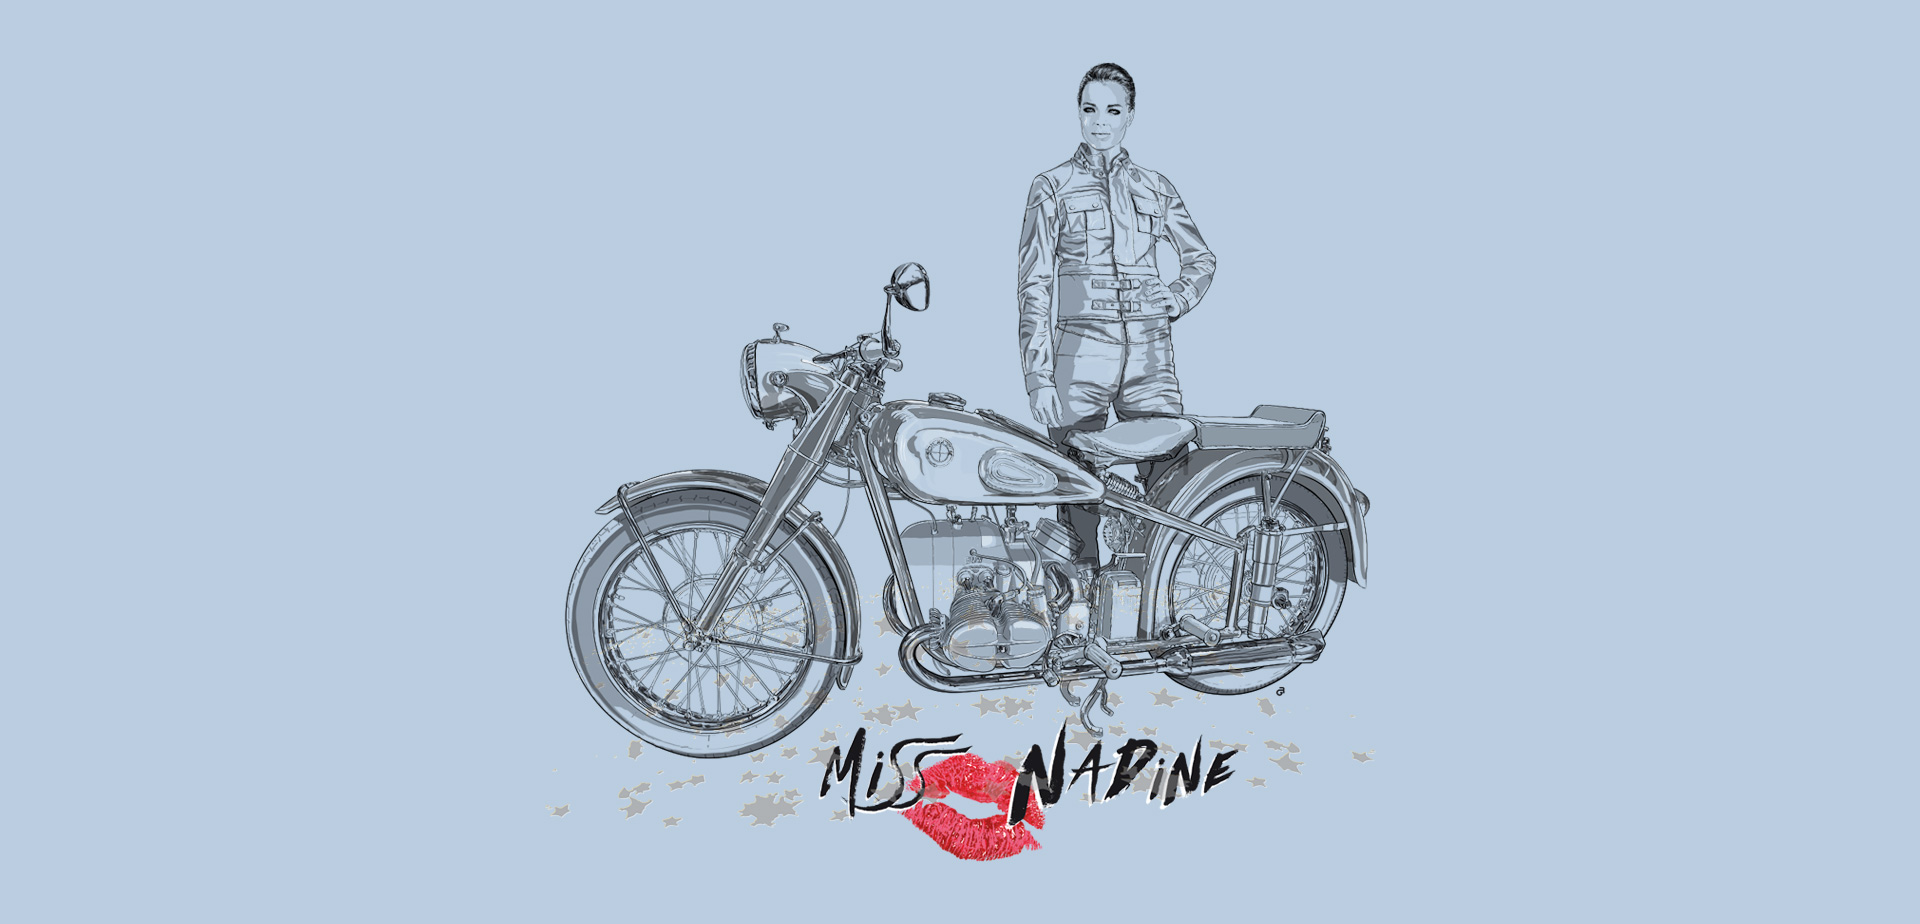 Romy Schneider como Miss Nadine. Logo para el depósito de su moto.